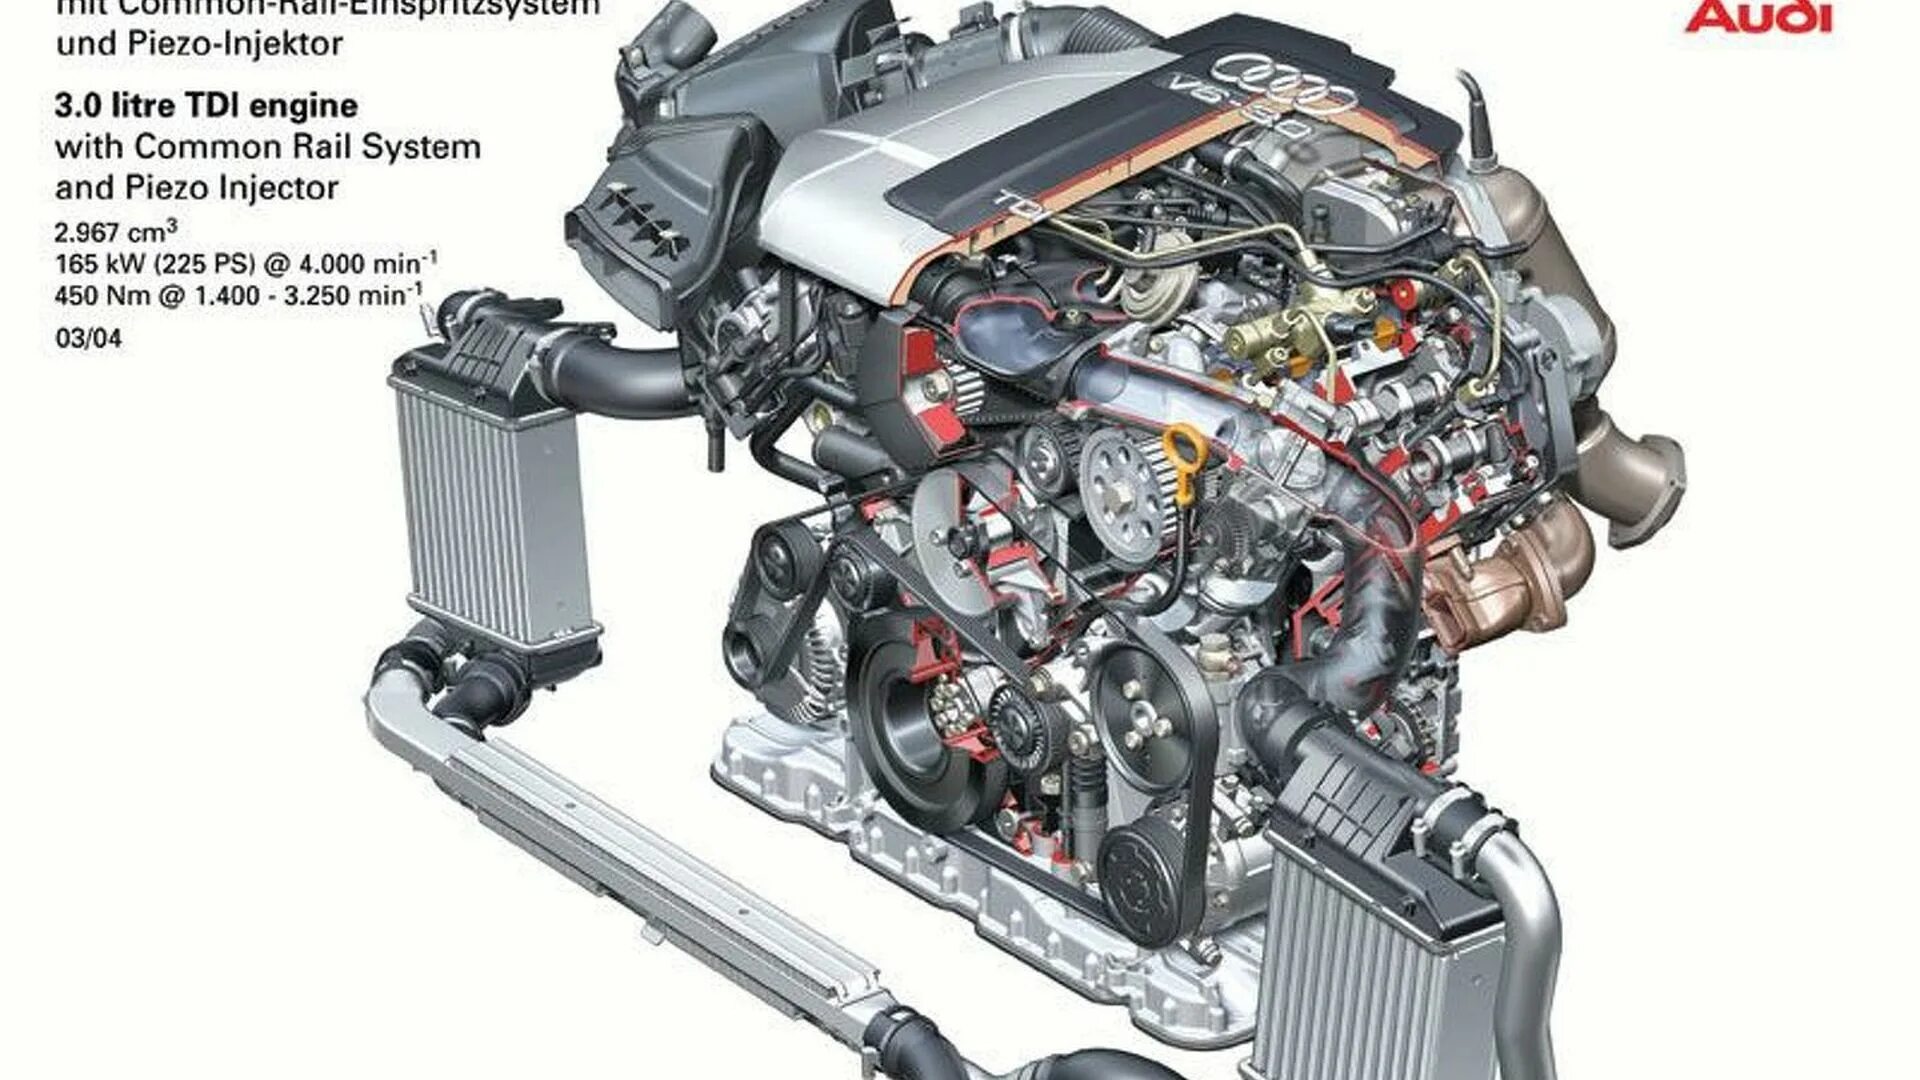 Двигатель Ауди v6 4.2 TDI. Audi a6 2.0 Diesel мотор. 3.0 TDI Audi двигатель. Система охлаждения двигателя Ауди q7 4,2tdi. Дизель 7 3 литра